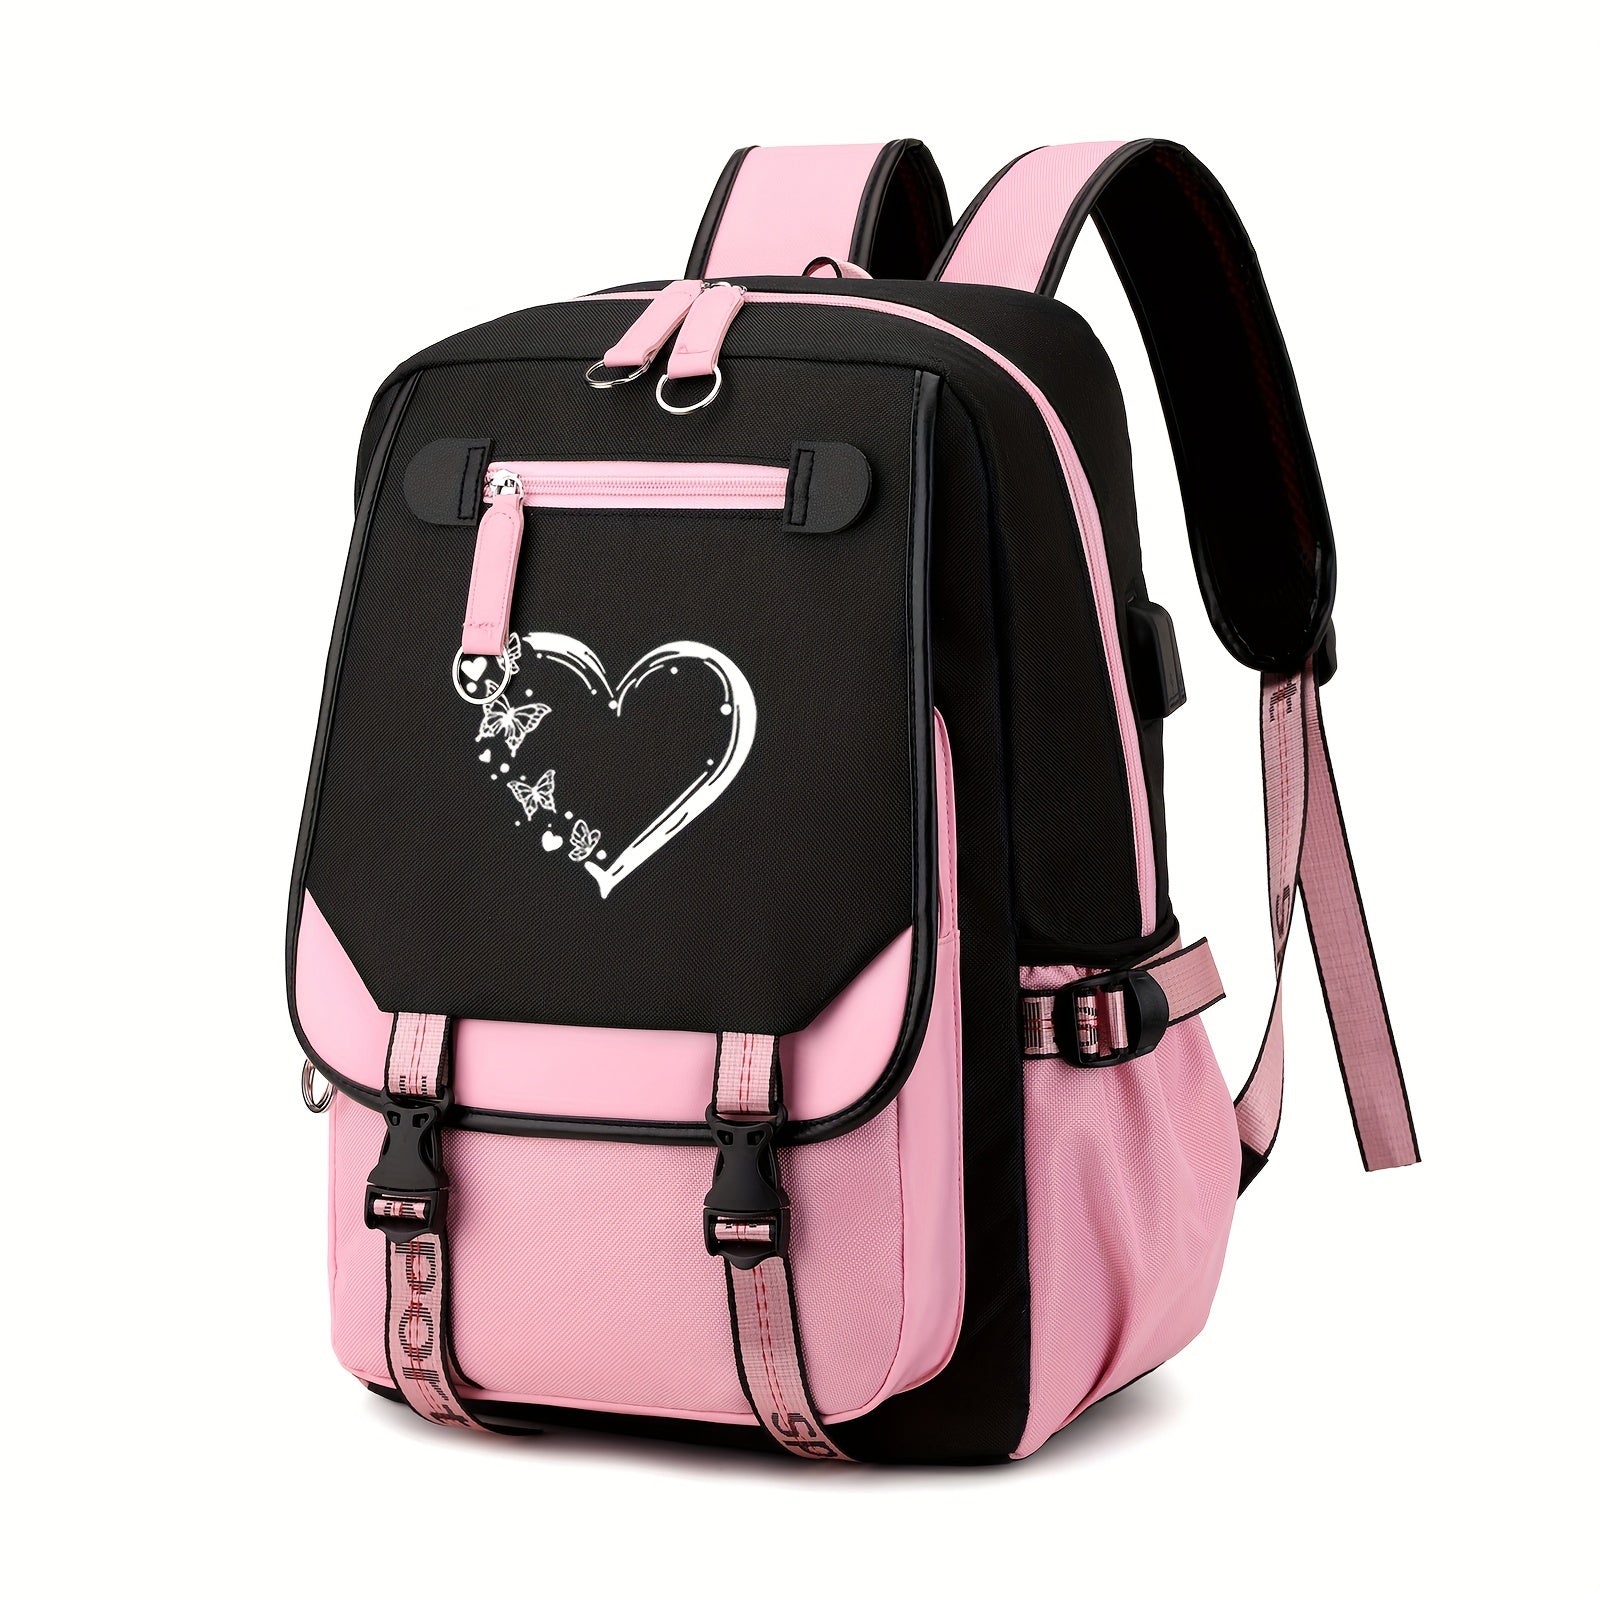 Love Heart Christian Backpack claimedbygoddesigns